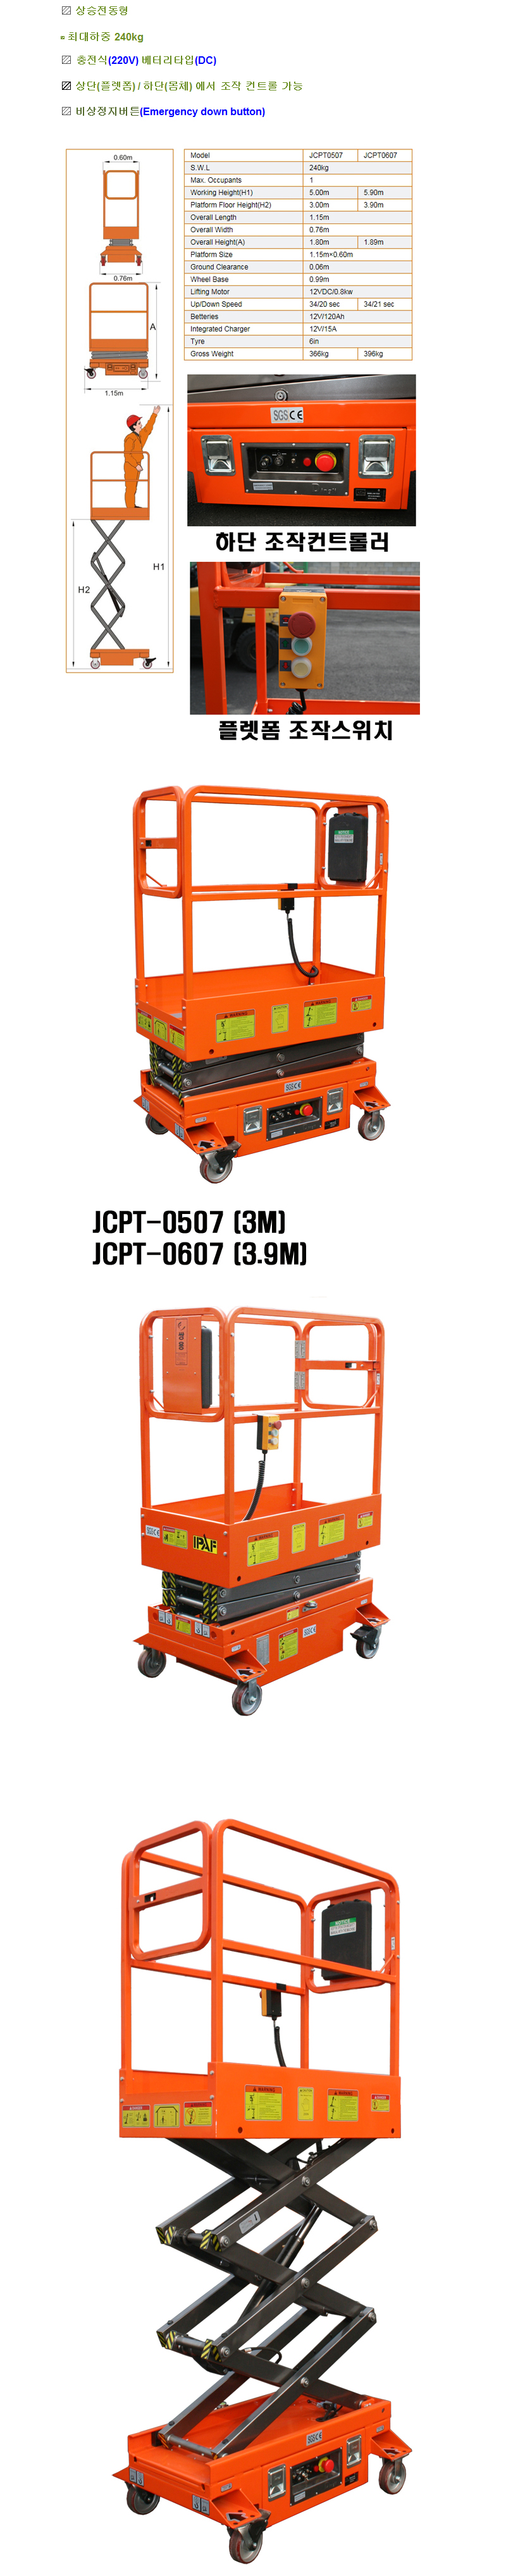 JCPT-0507